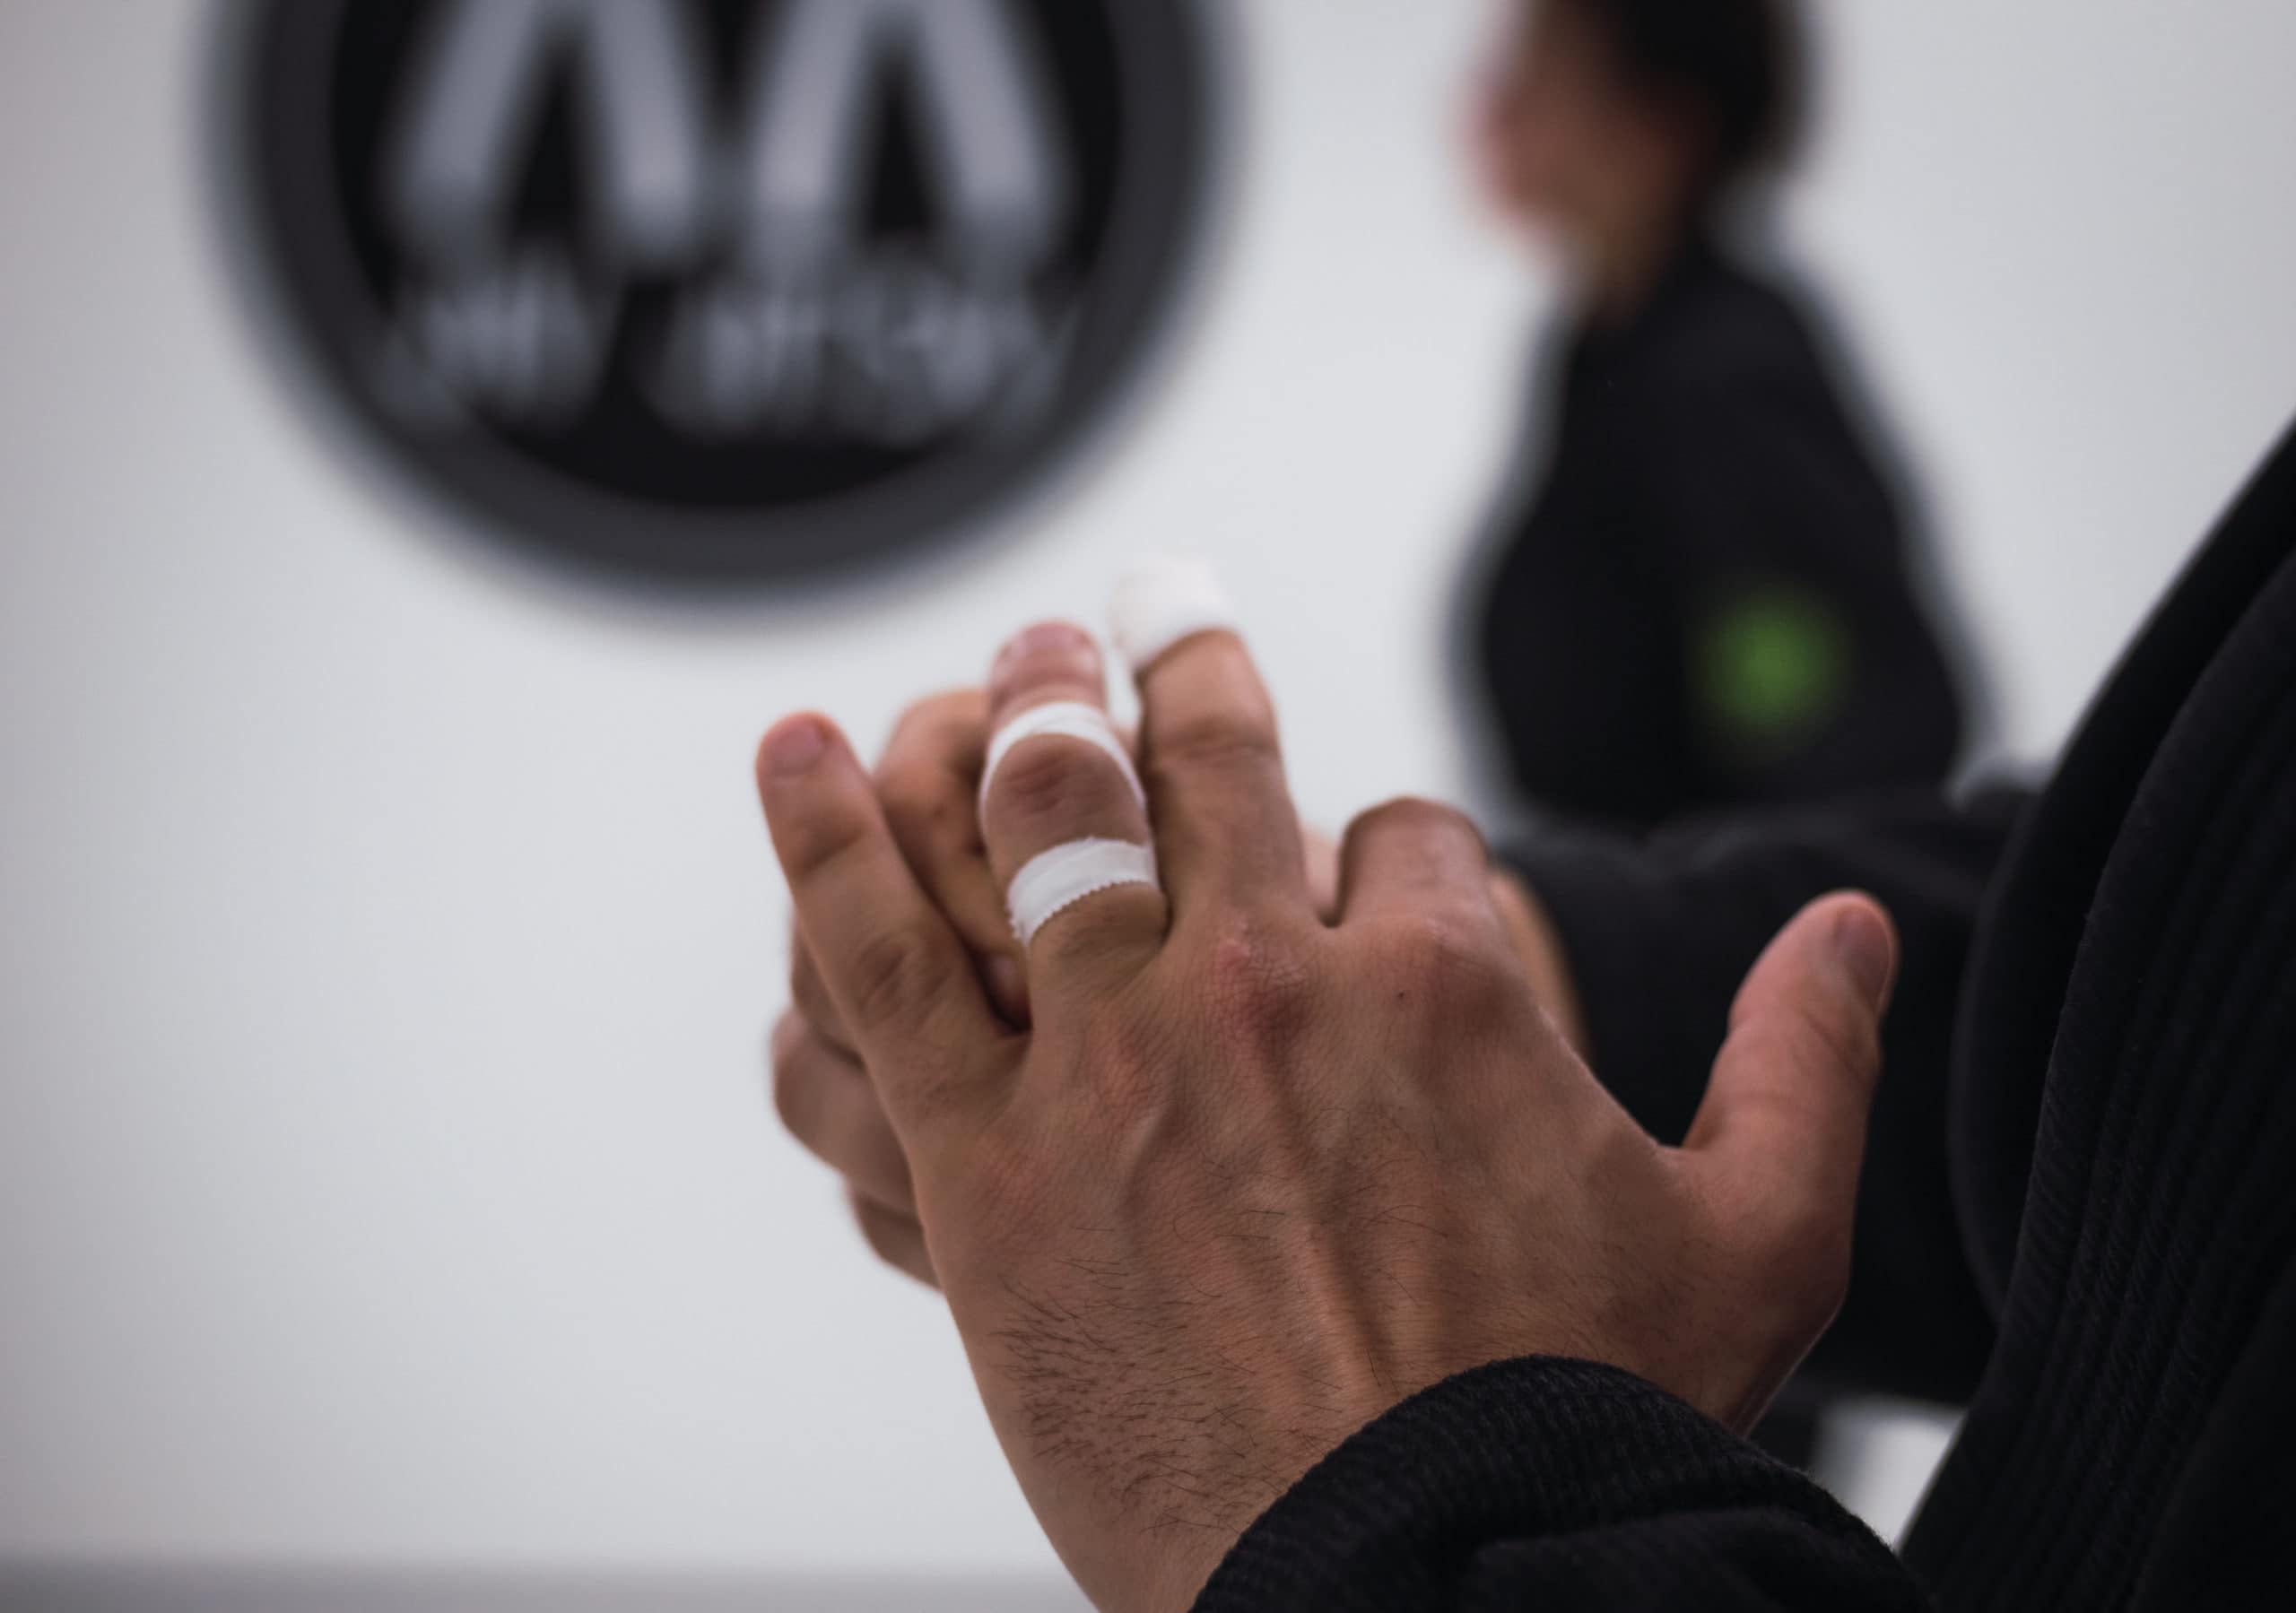 Wrapping fingers for a Brazilian Jiu Jitsu class